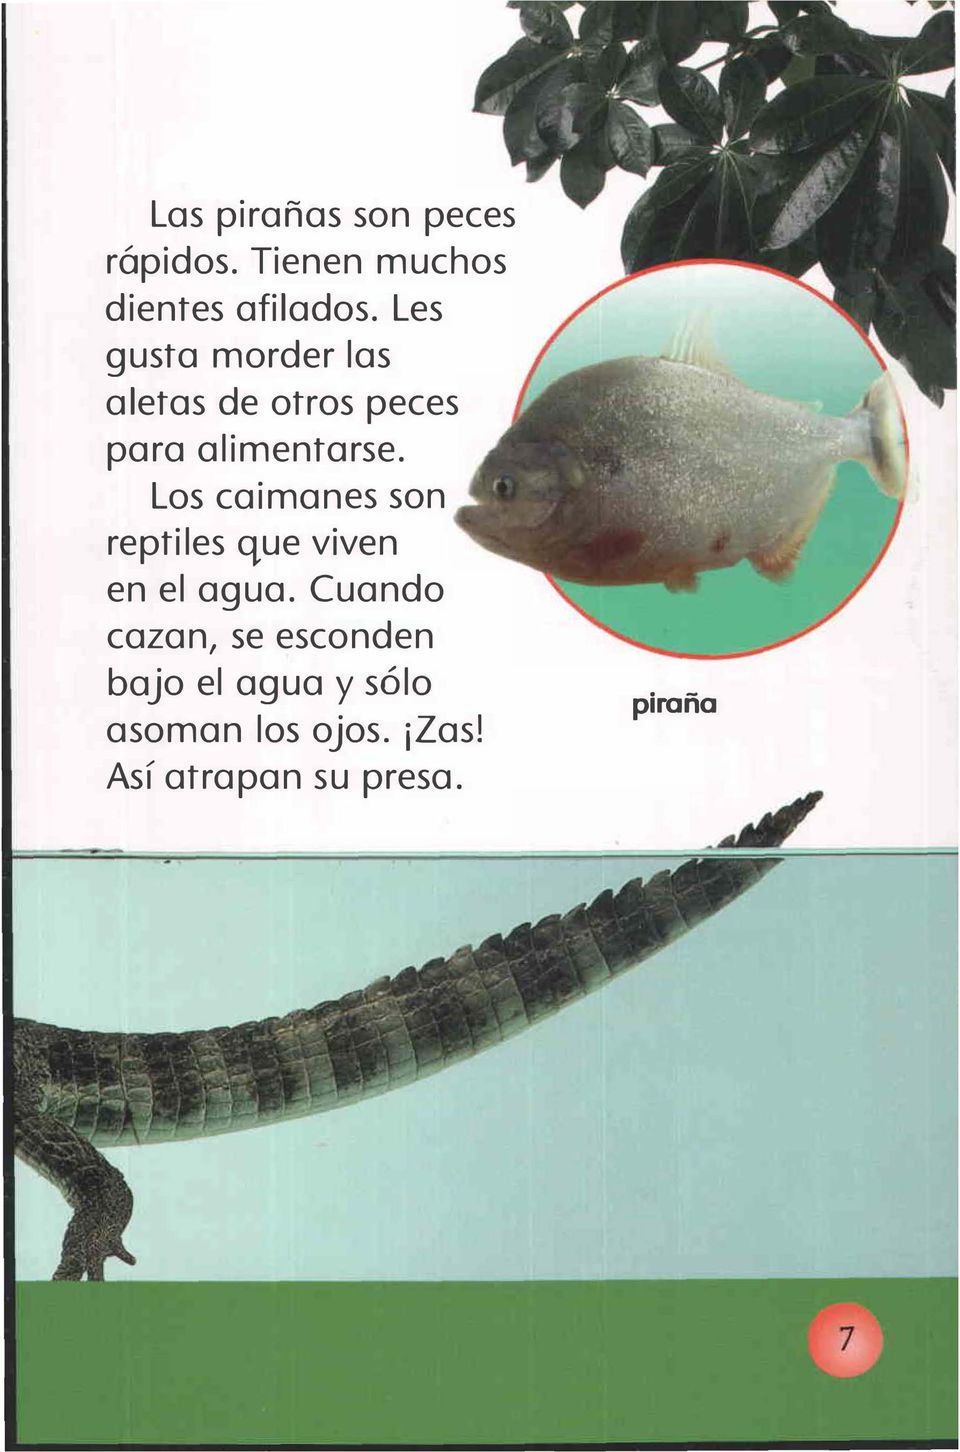 Los caimanes son reptiles que viven en el agua.